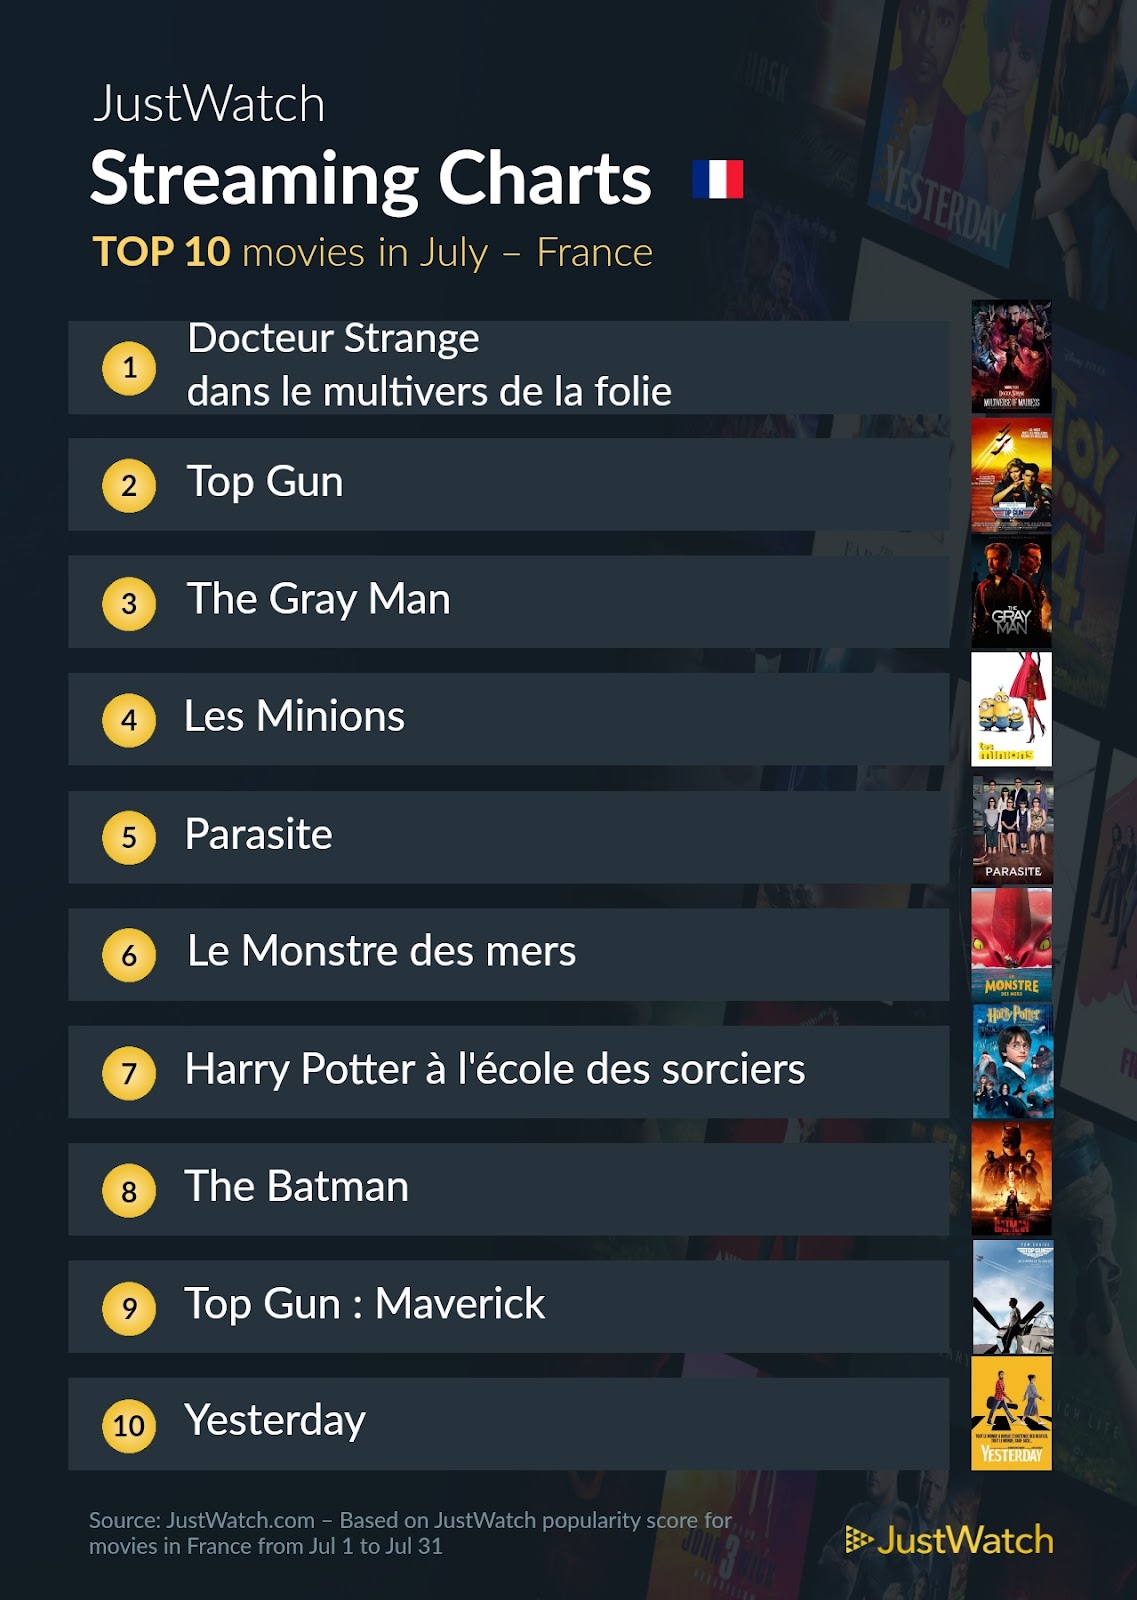 Doctor Strange 2, Stranger Things, Manifest... : Le top 10 des films et séries les plus populaires sur les plateformes de streaming en juillet